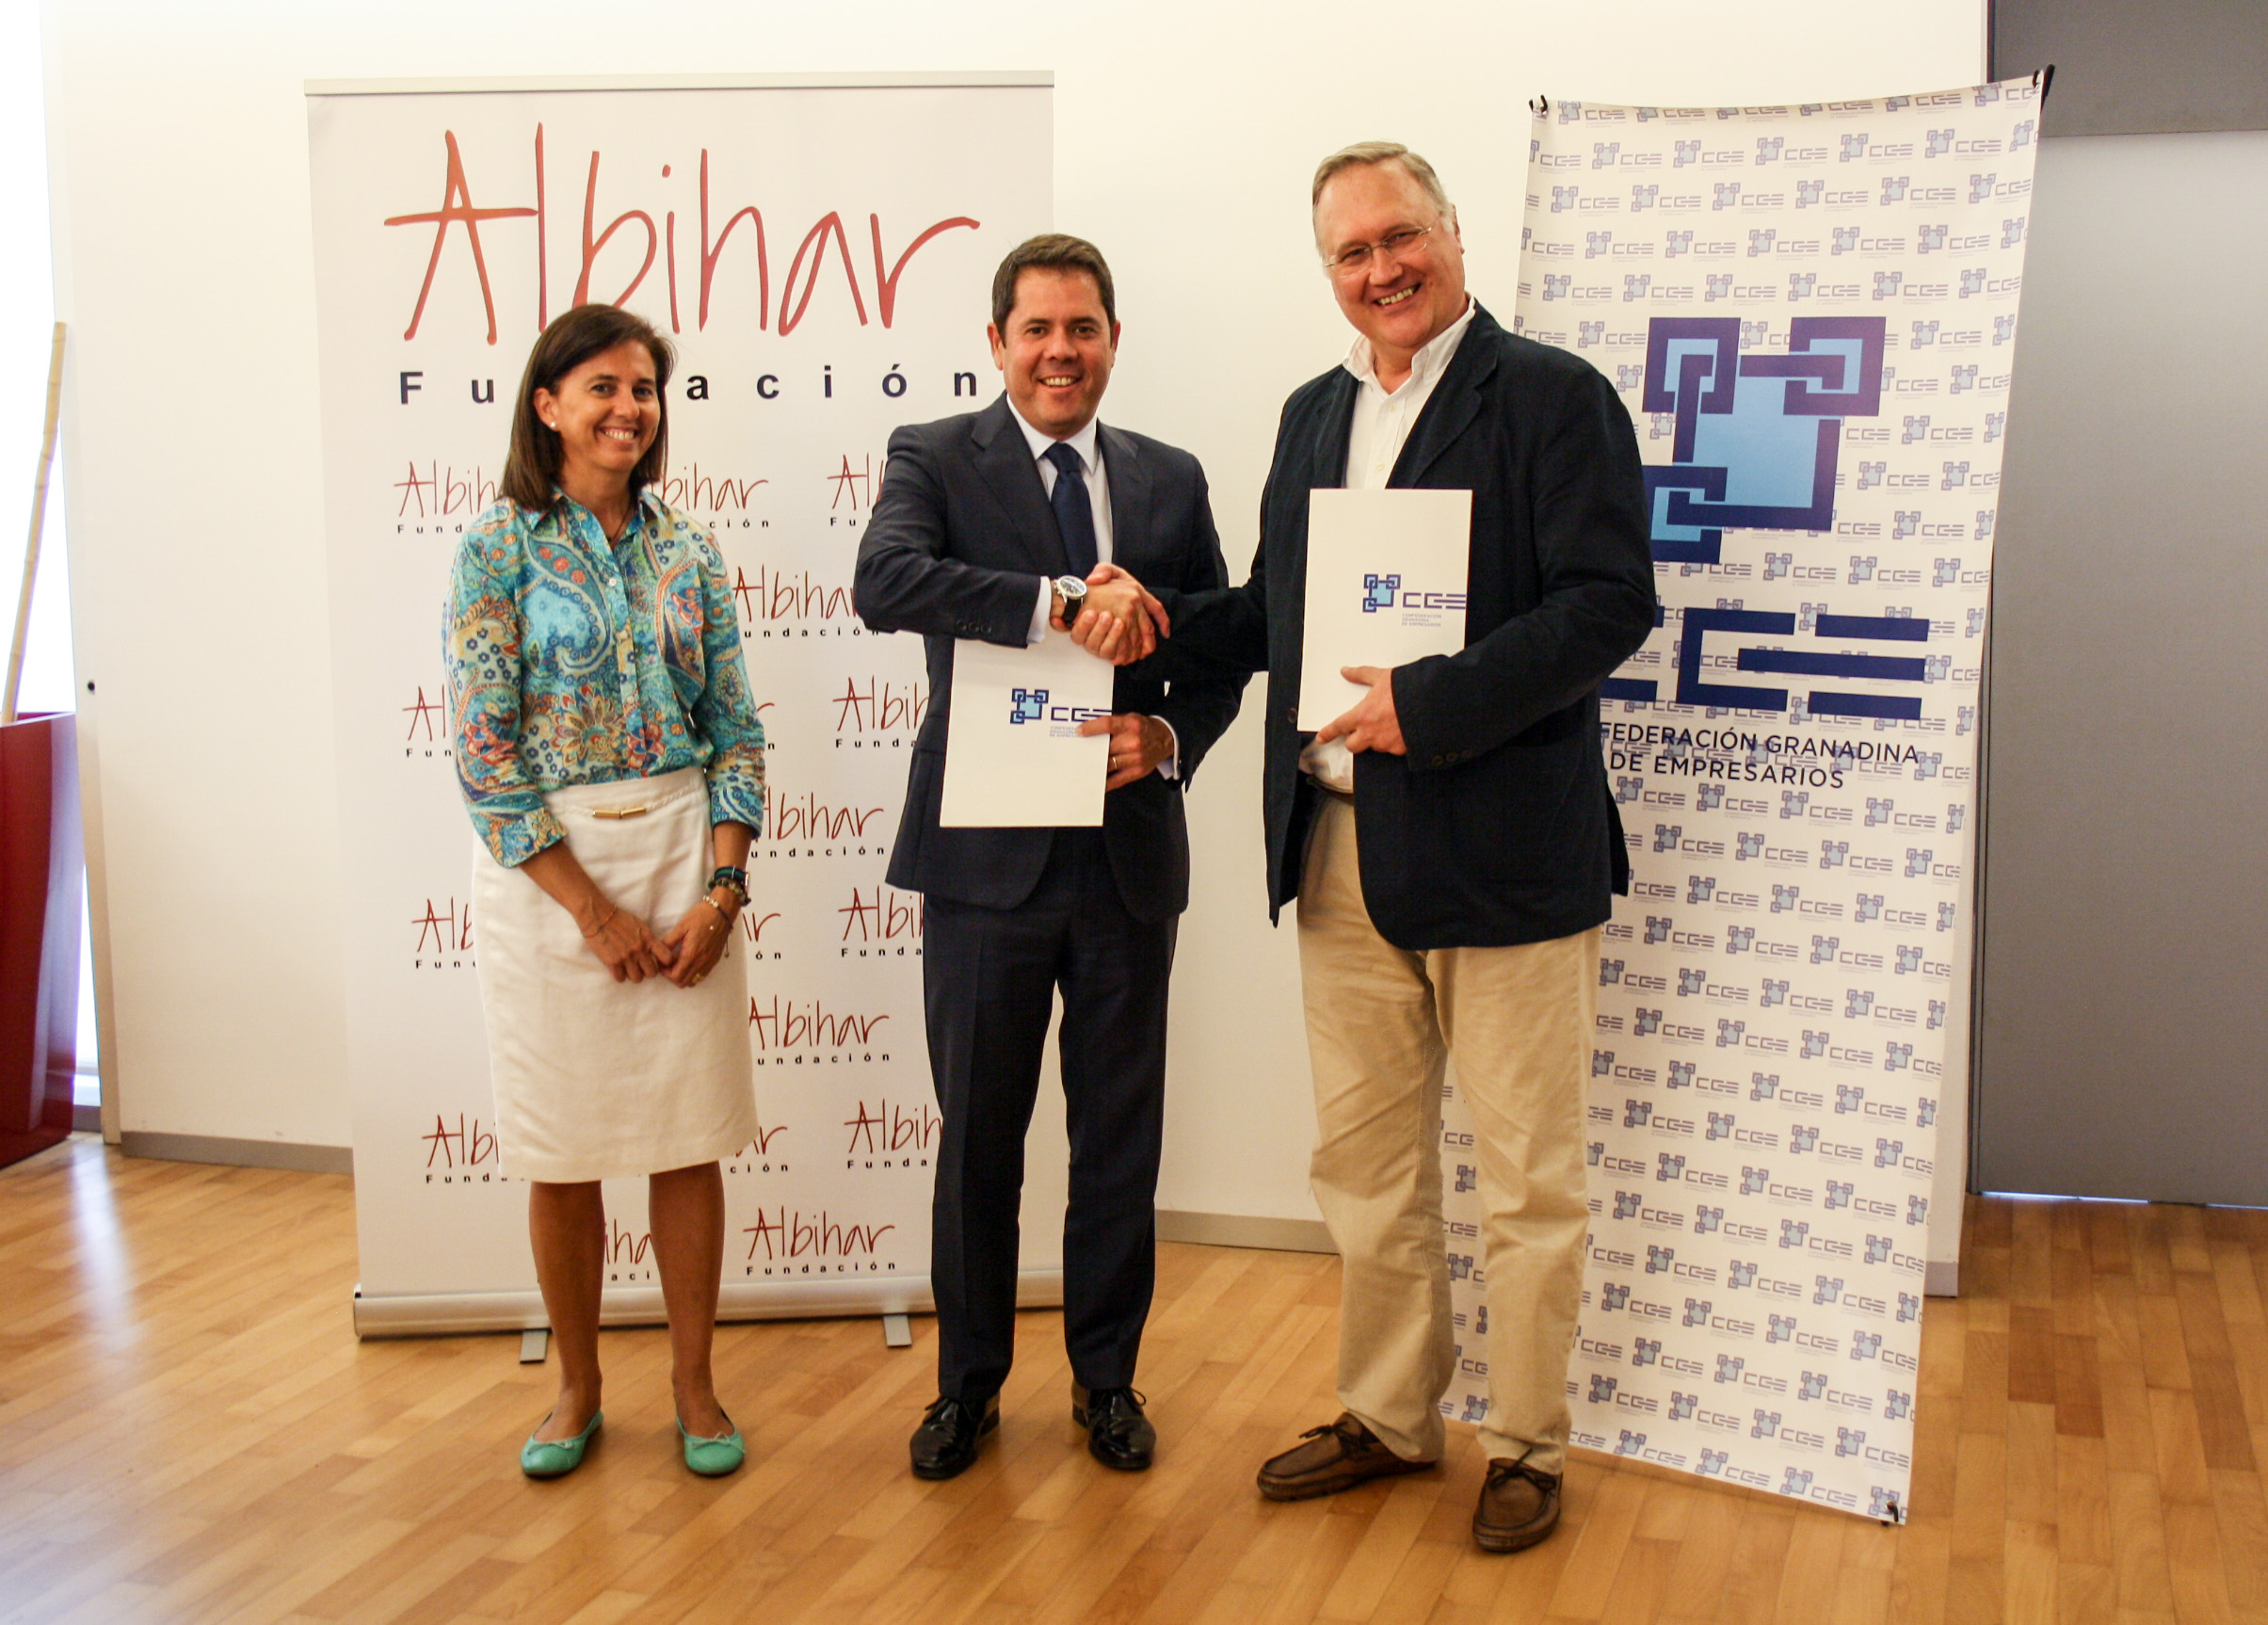 La CEM y la Fundación Albihar firman un convenio para el impulso de proyectos solidarios y de cooperación internacional